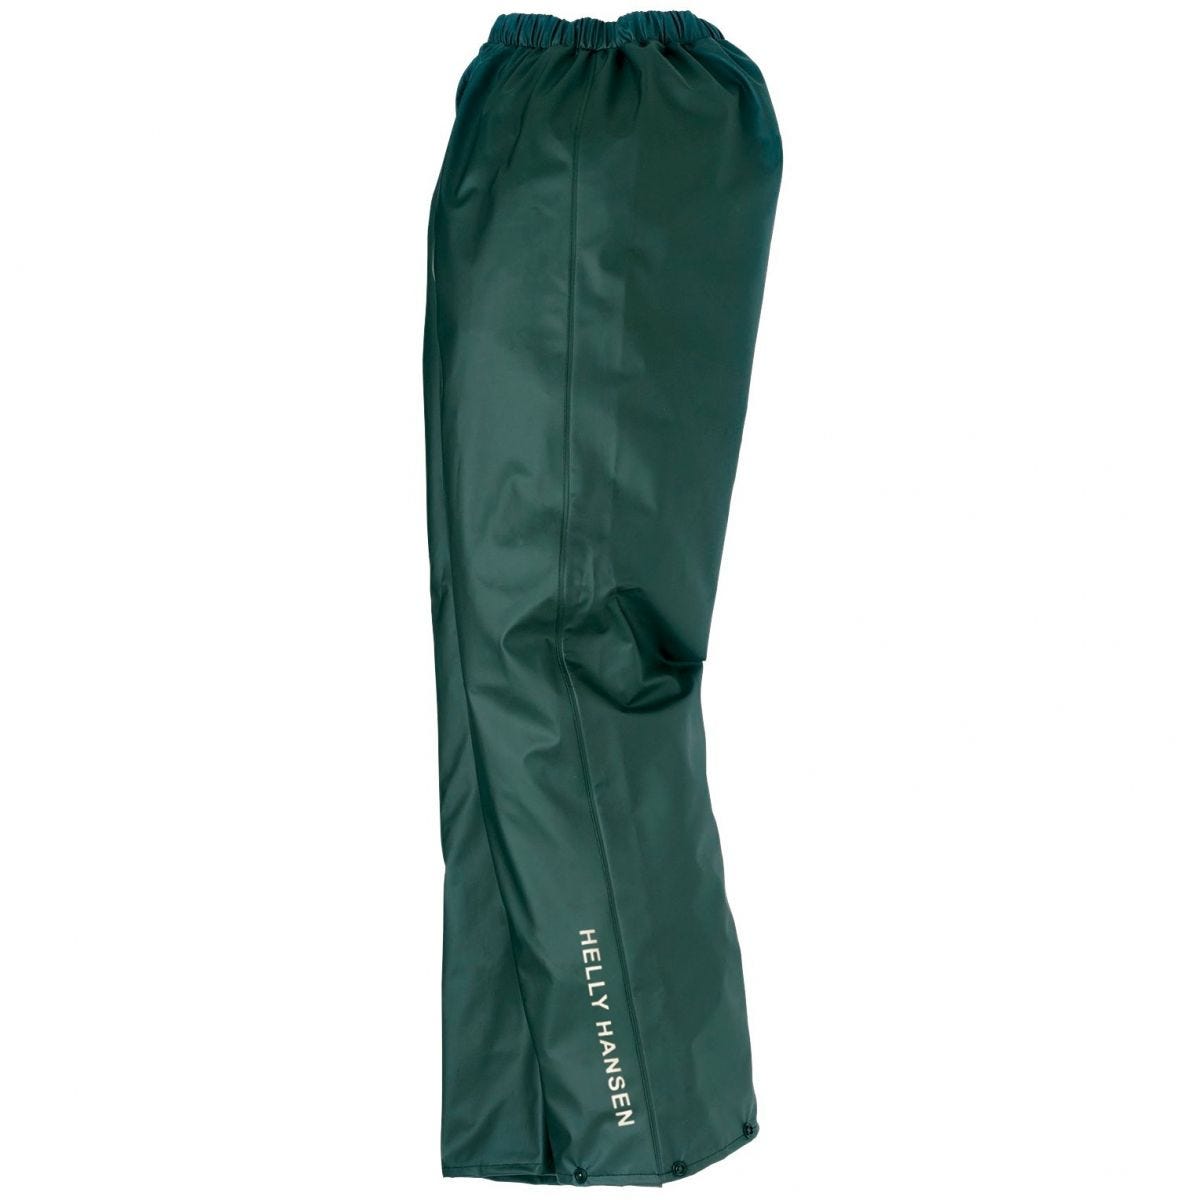 Pantalon de pluie imperméable Voss vert - Helly Hansen - Taille 4XL 0